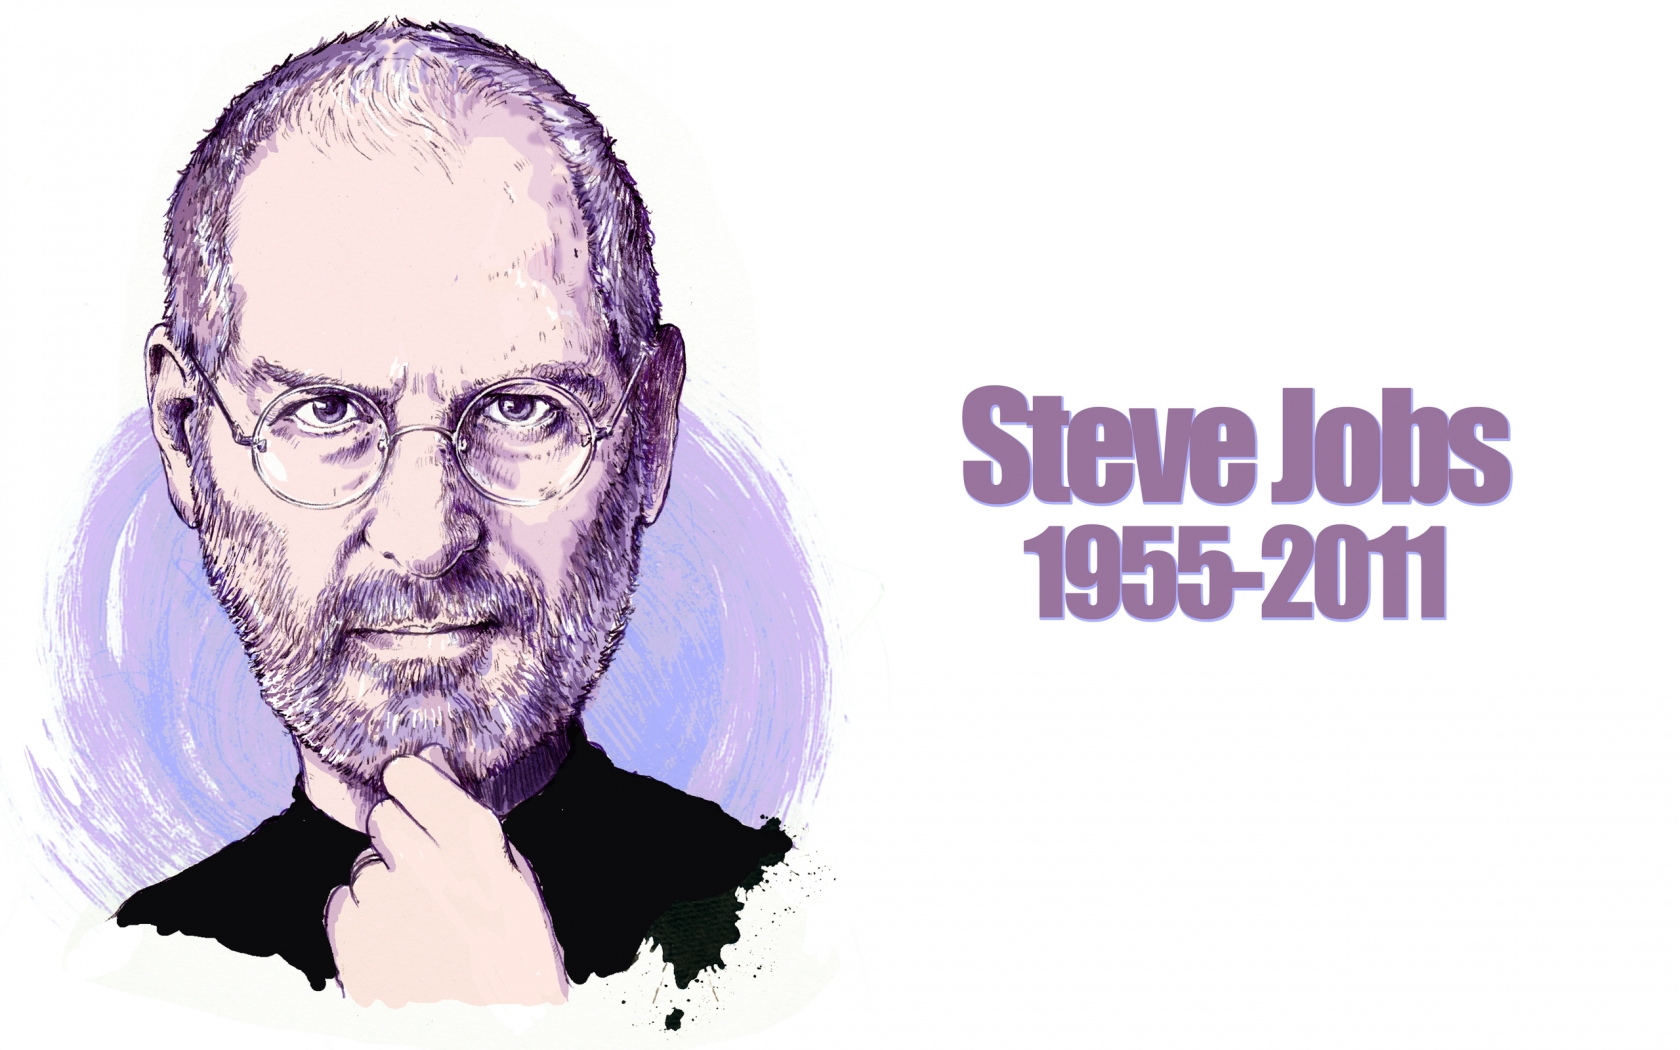 Steve Jobs Portrait for 1680 x 1050 widescreen resolution